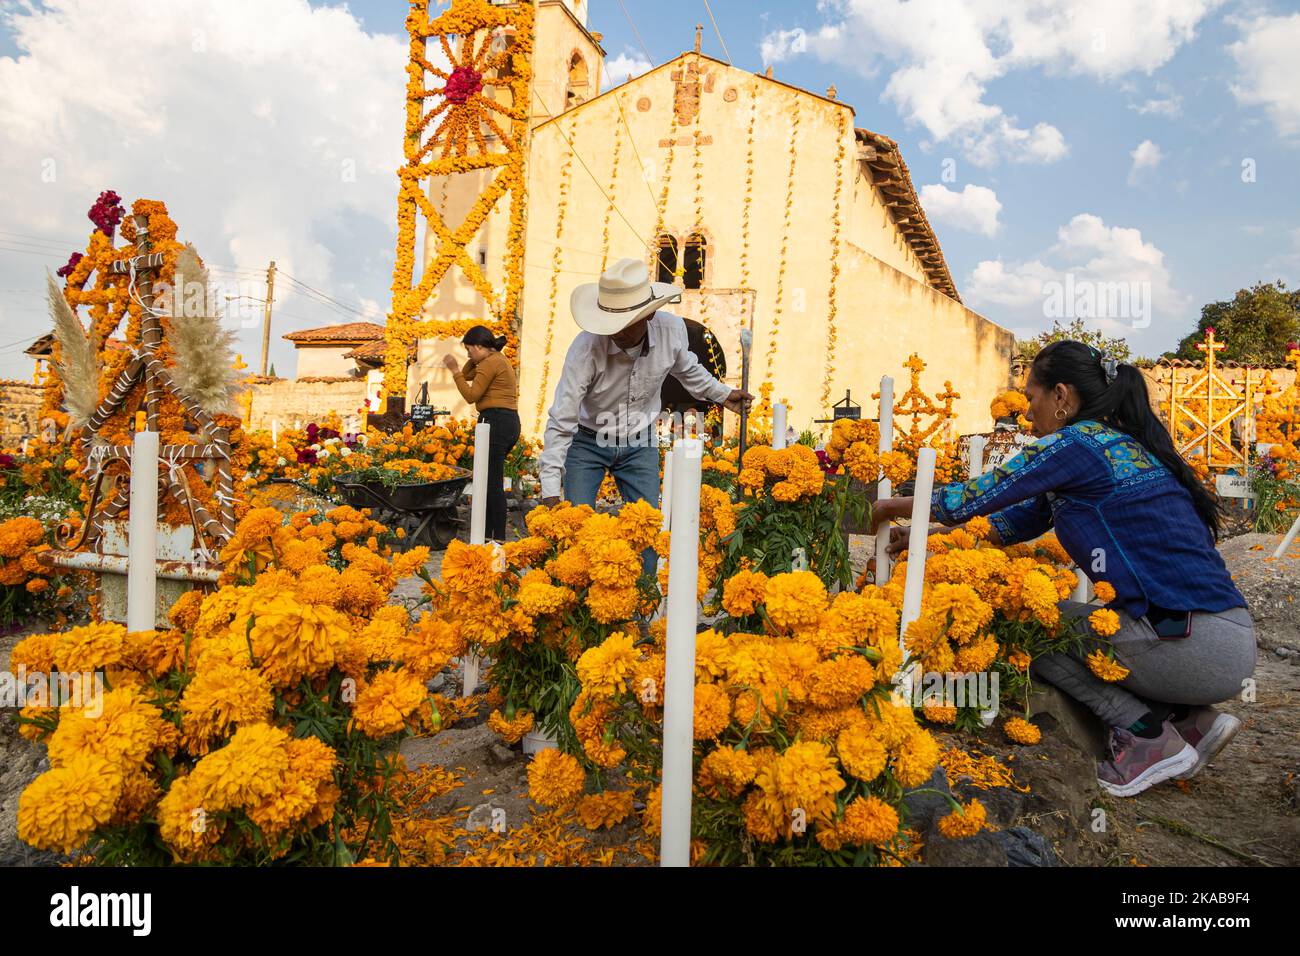 Morelia, Mexiko, 1. November 2022, Ein Paar setzt während der Feier des Totenfestes auf dem Friedhof von Arocutin, Michoacan, Mexiko, einen letzten Schliff an einem Altar. Die indigenen Purepecha dieses Dorfes bereiten dieses jährliche Ritual des Gedenkens vor, indem sie Altäre mit Ringelblumen, Kerzen und dem Lieblingsessen oder Getränk der Verstorbenen bauen. Die Mahnwache findet in der Nacht des 1.. November statt und hat sich zu einer wichtigen Touristenattraktion im zentralmexikanischen Bundesstaat Michoacan entwickelt. Brian Overcast/Alamy Live News Stockfoto